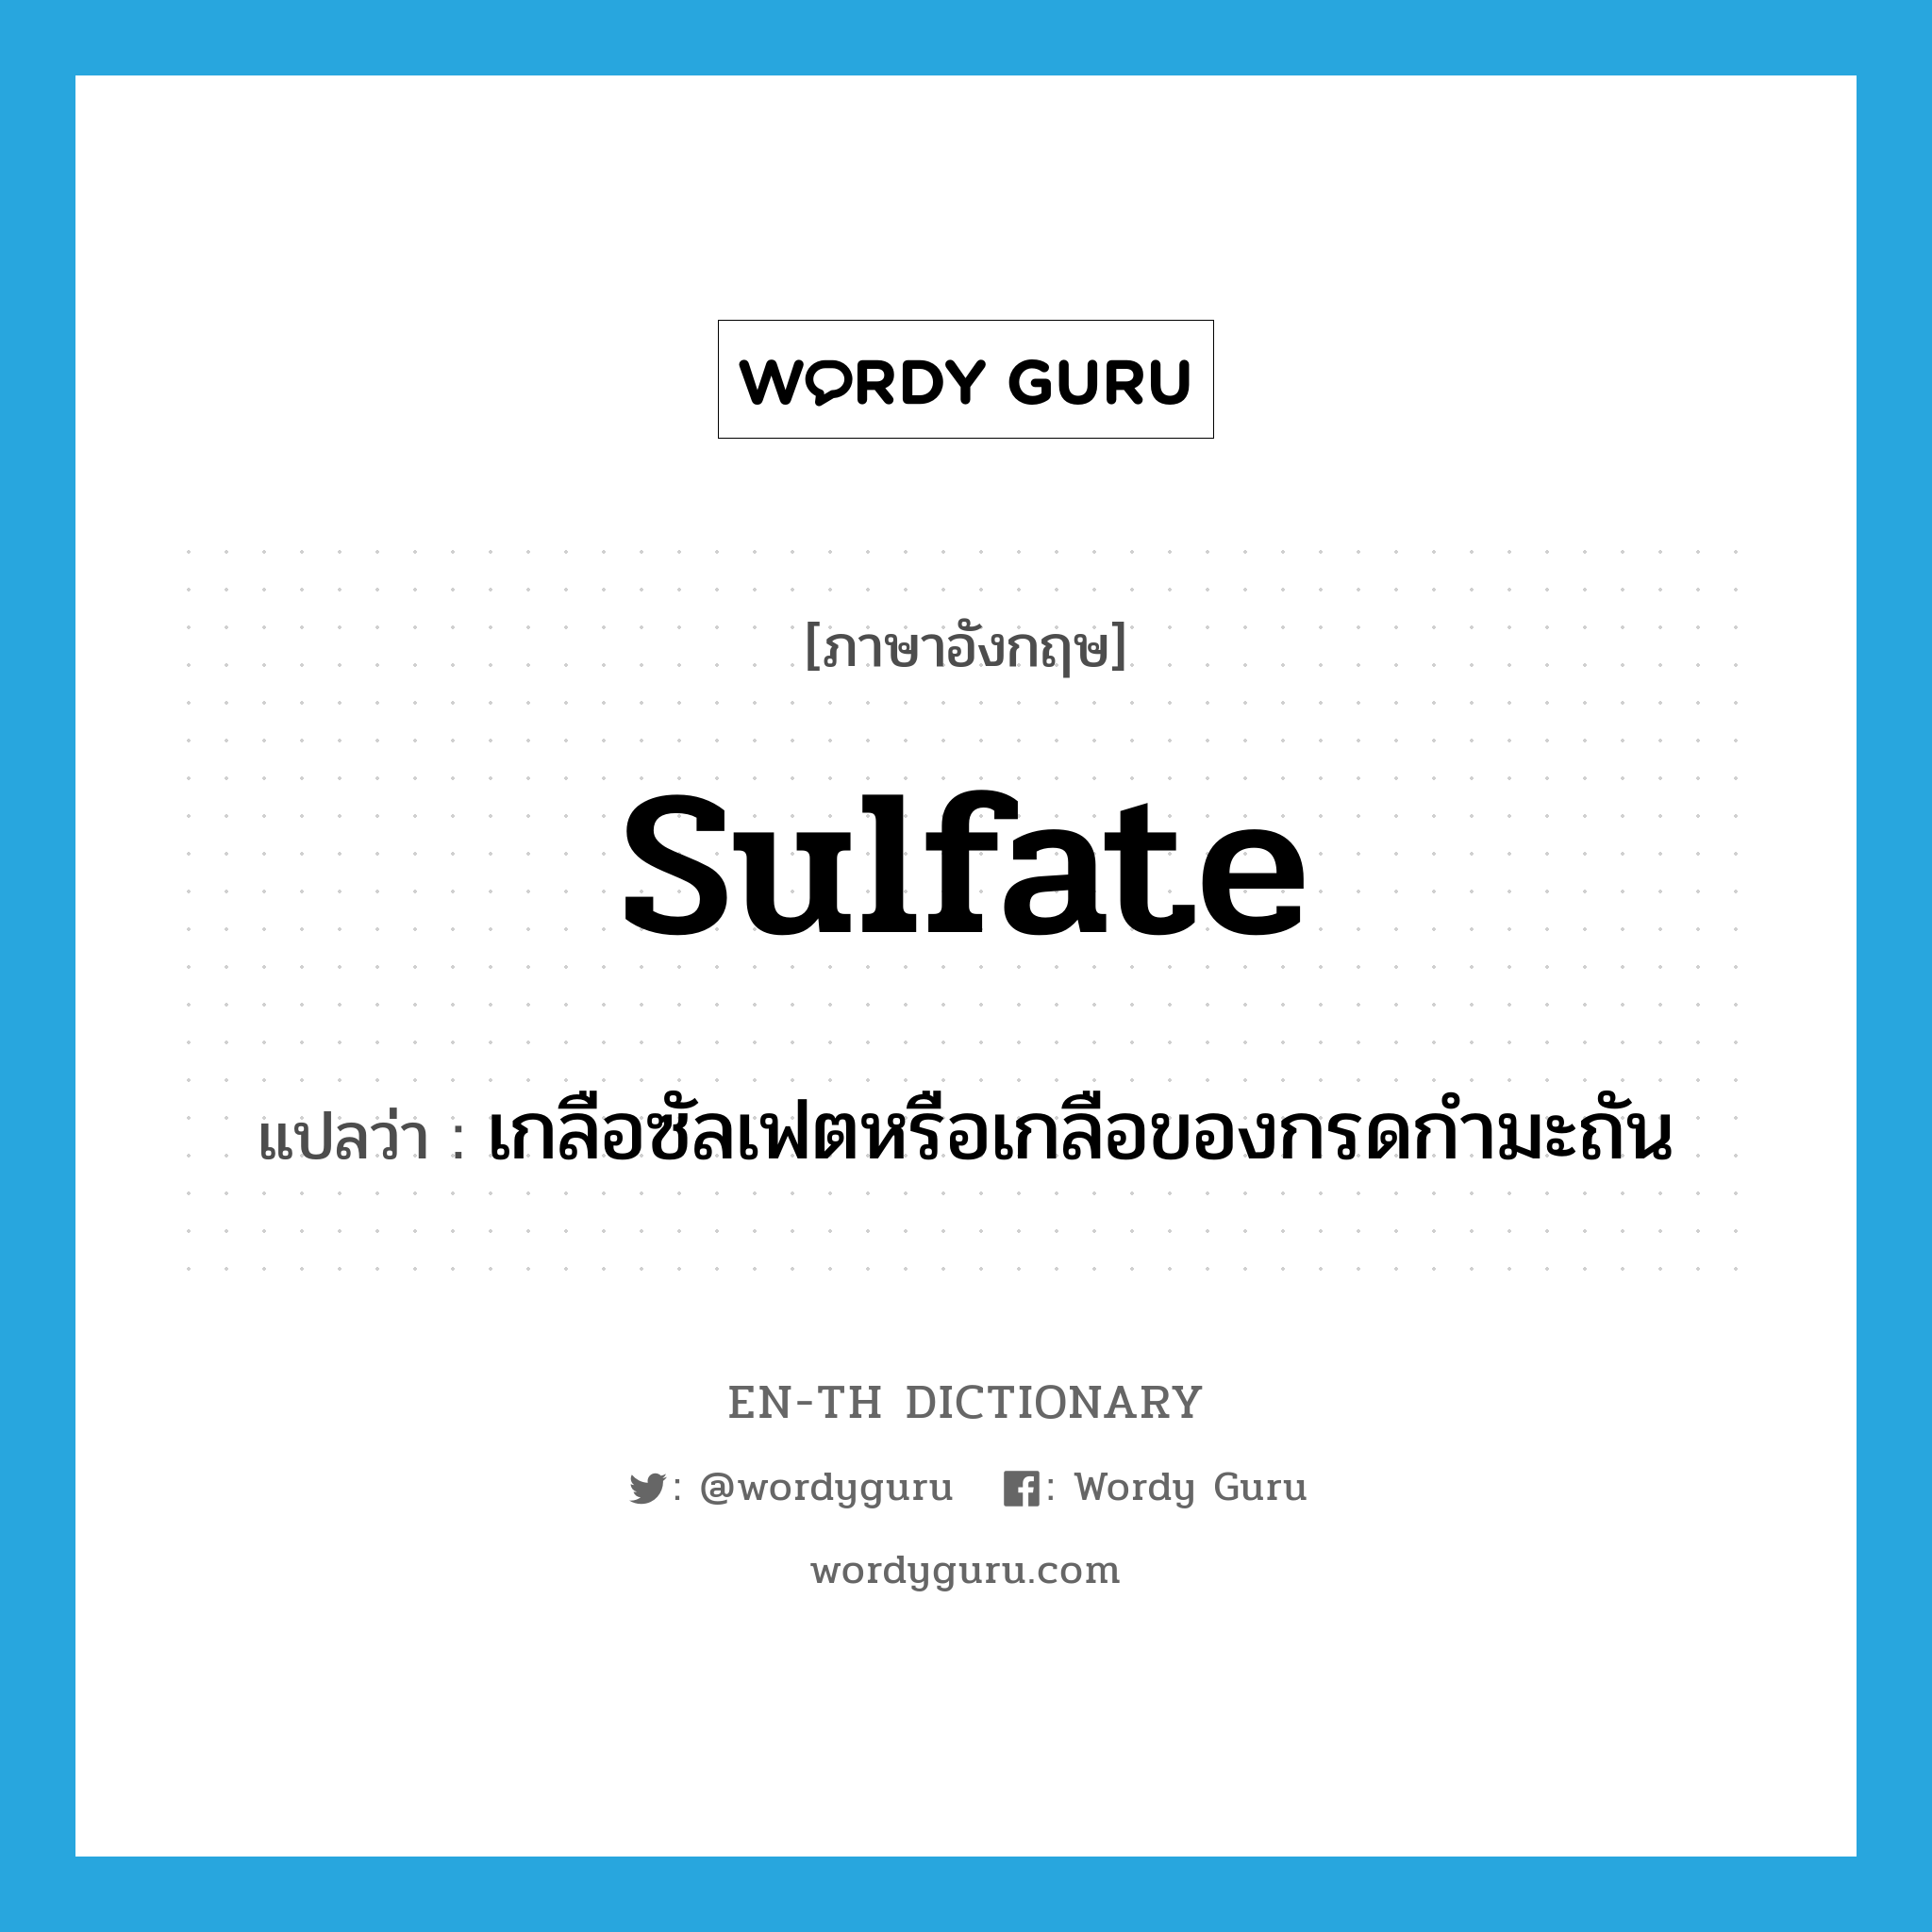 sulfate แปลว่า?, คำศัพท์ภาษาอังกฤษ sulfate แปลว่า เกลือซัลเฟตหรือเกลือของกรดกำมะถัน ประเภท N หมวด N